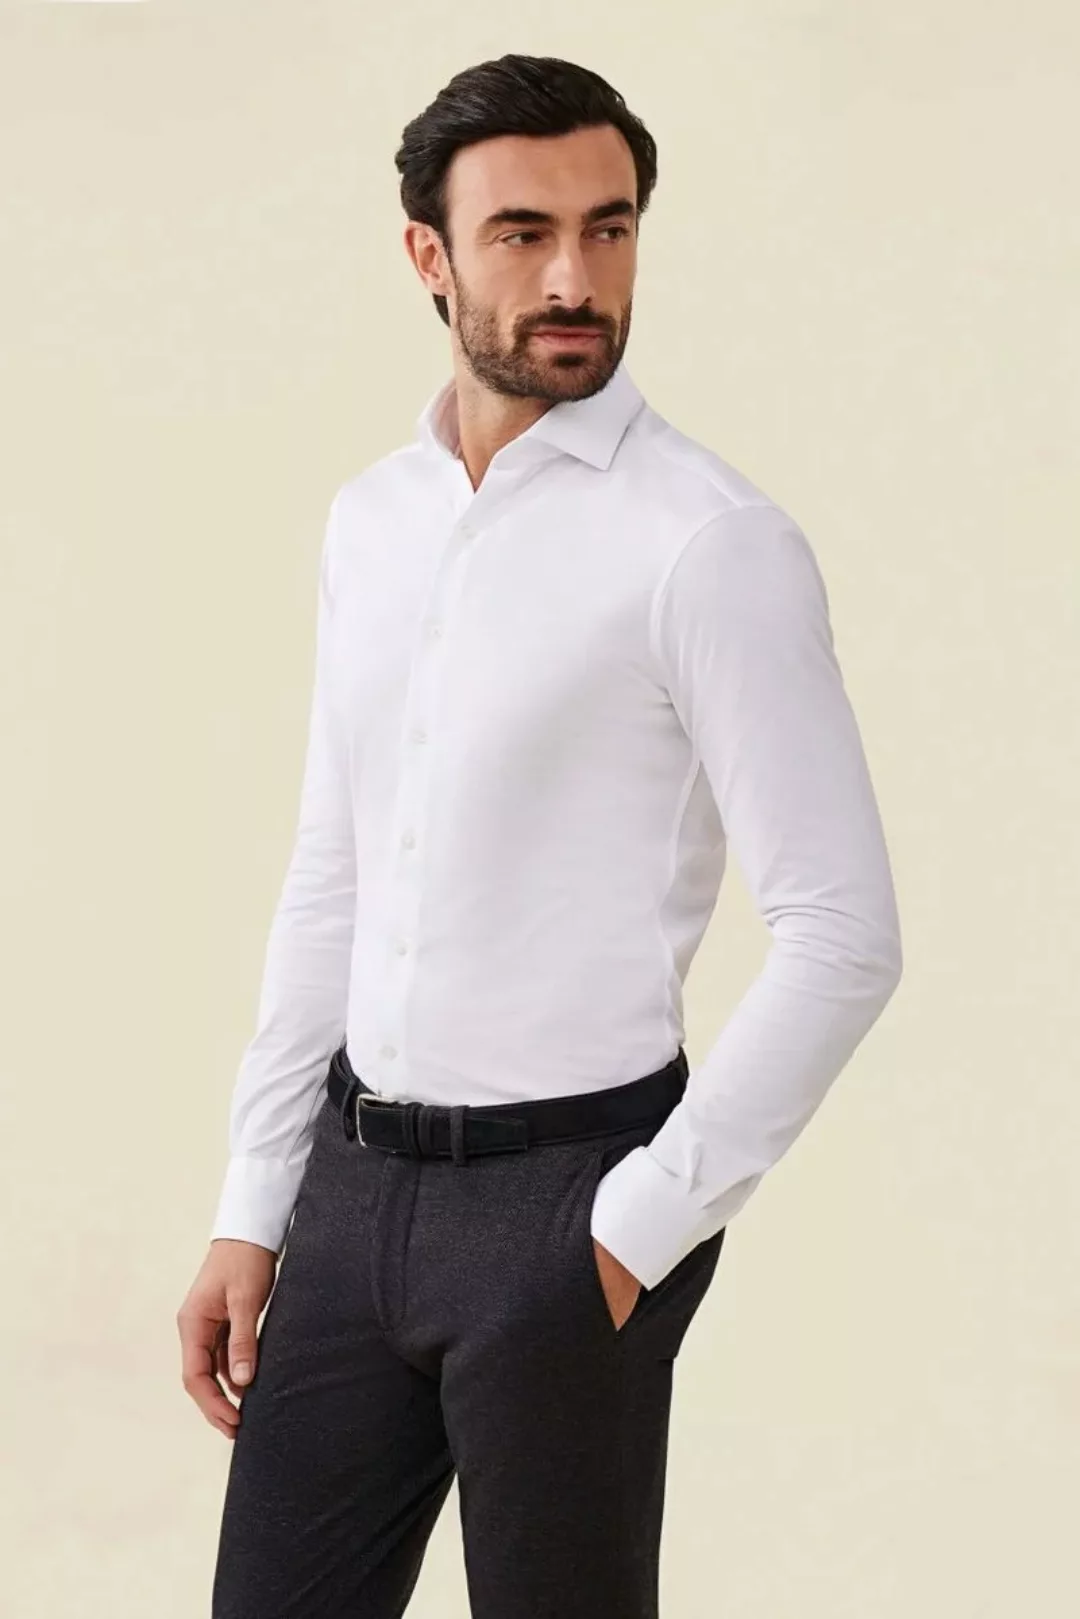 Cavallaro Piqué Hemd Weiß - Größe 39 günstig online kaufen